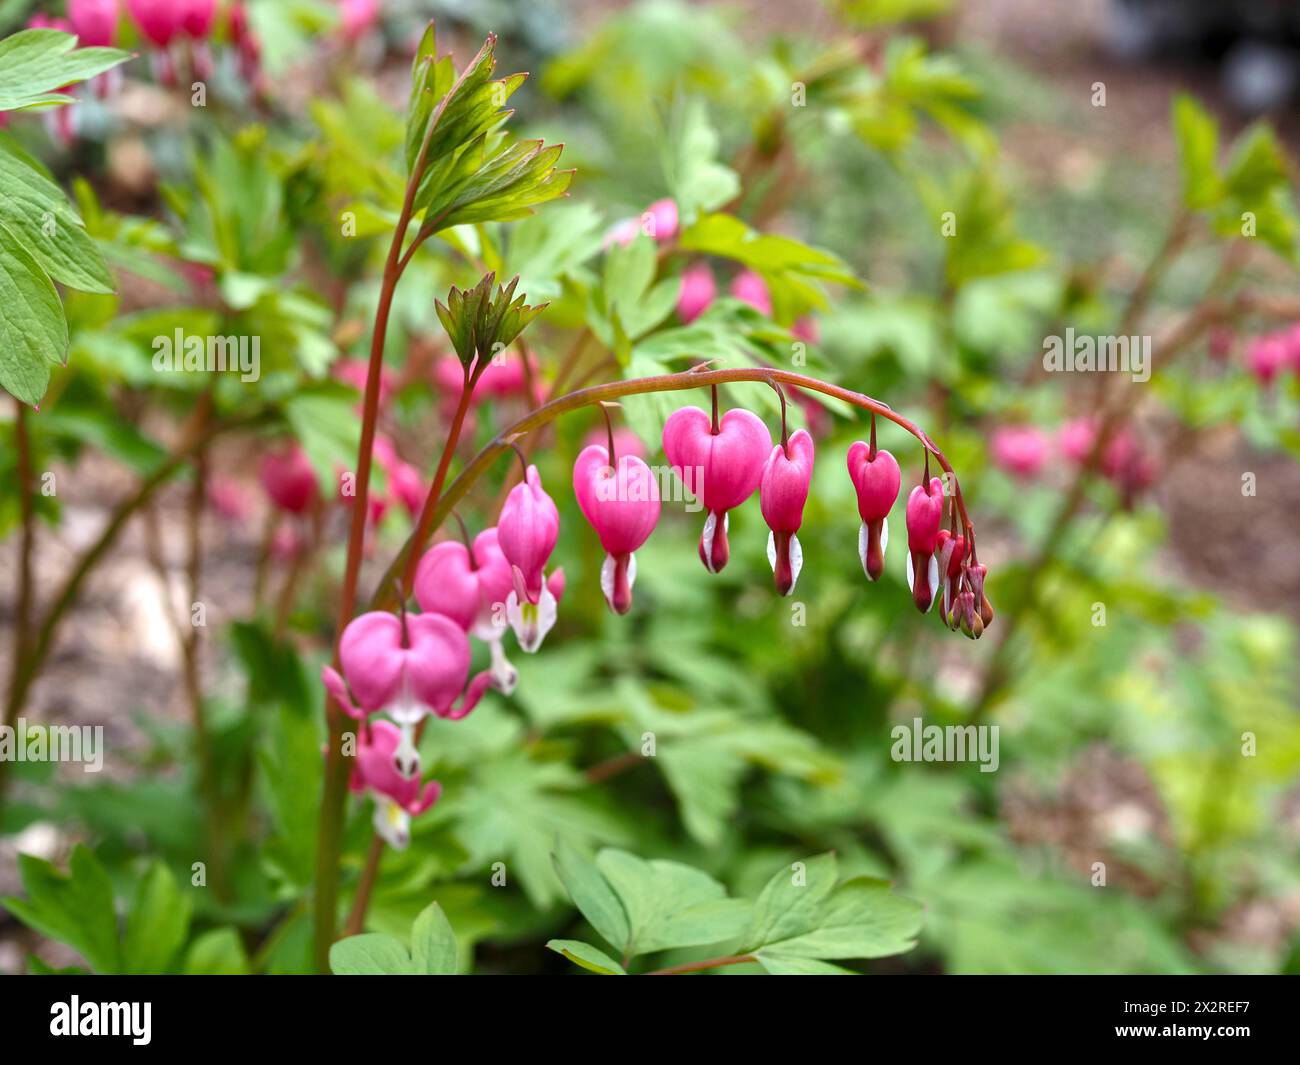 Nahaufnahme Blutendes Herz (Lamprocapnos spectabilis) - Rosa, Rot, weiß, frühe Frühling, schattige Blüte zwischen grünen Blättern und Laub Stockfoto